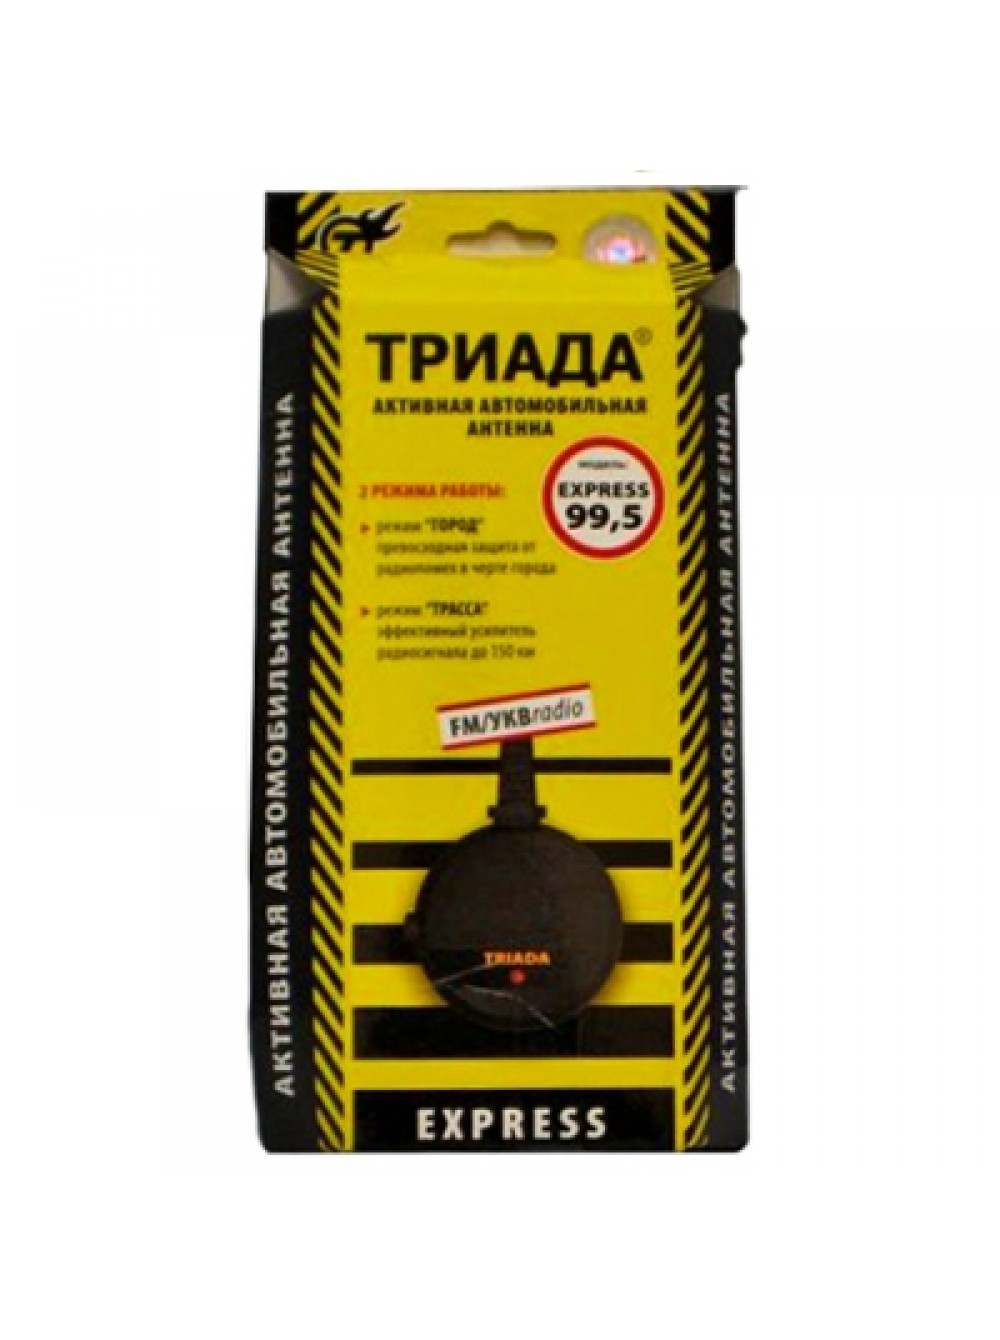 Антенна "Триада -99 Express" всеволновая, 2 реж. работы (город-трасса)